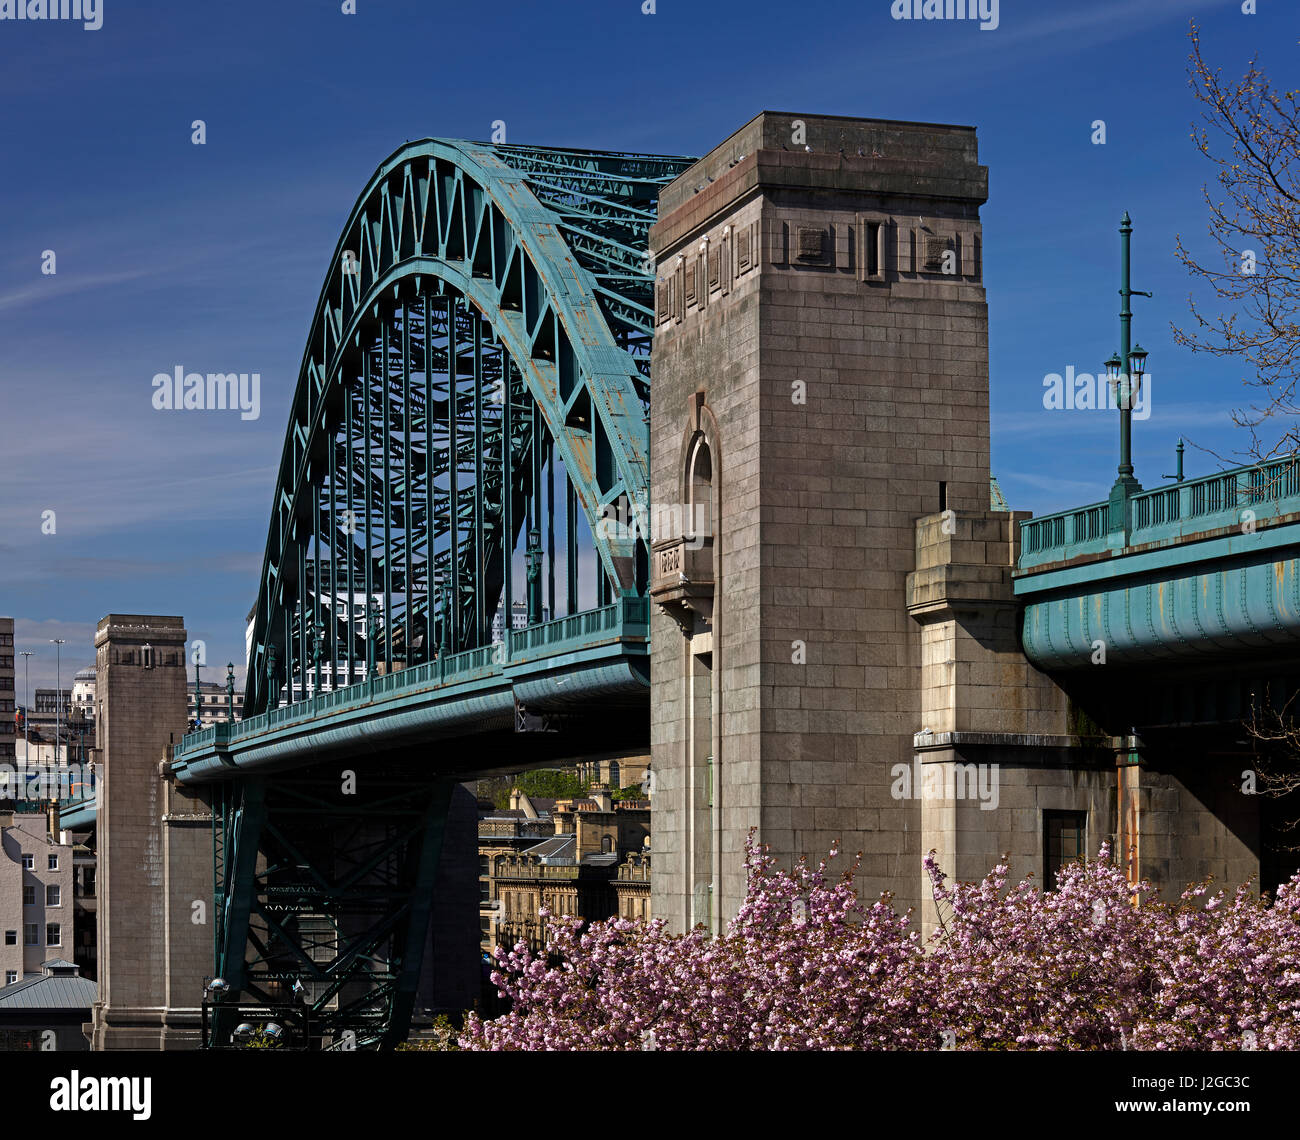 Una vista diurna del Tyne Bridge contra un cielo azul de la hora de verano en Newcastle Upon Tyne, al Noreste de Inglaterra, Reino Unido Foto de stock